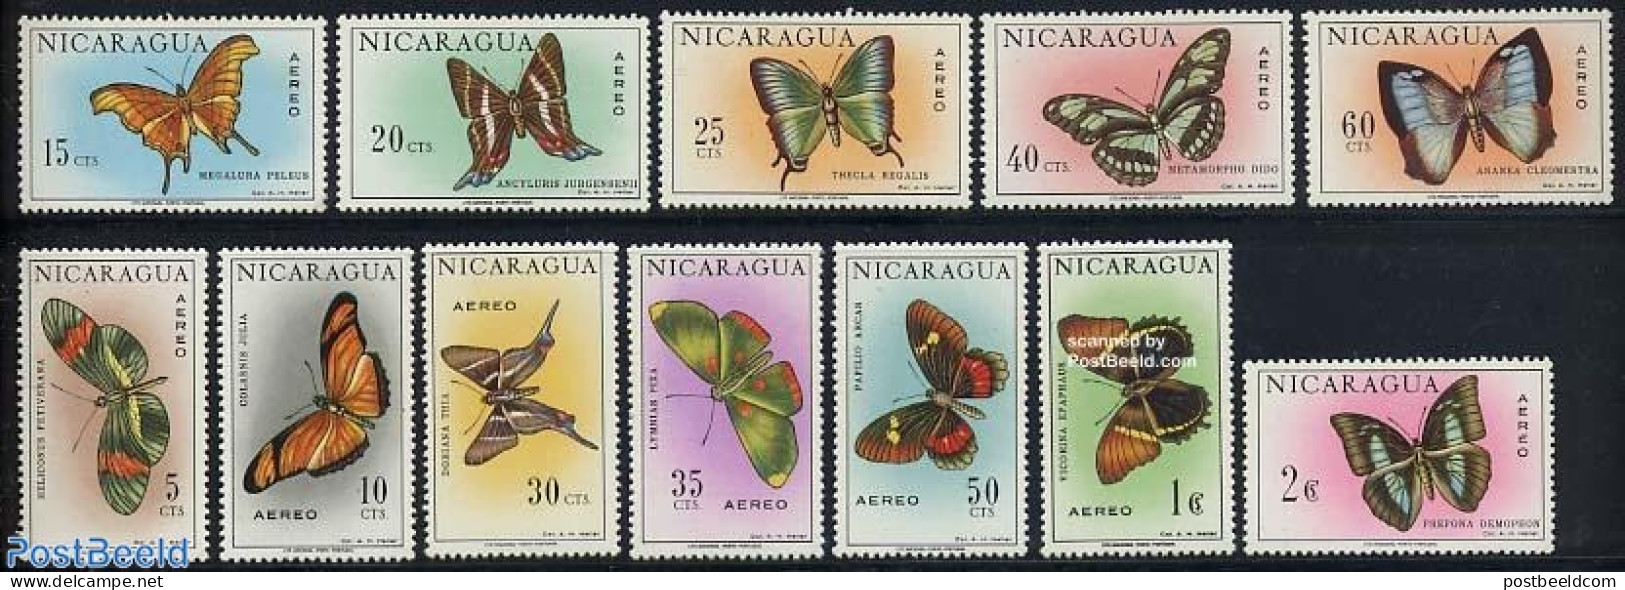 Nicaragua 1967 Butterflies 12v, Mint NH, Nature - Butterflies - Nicaragua